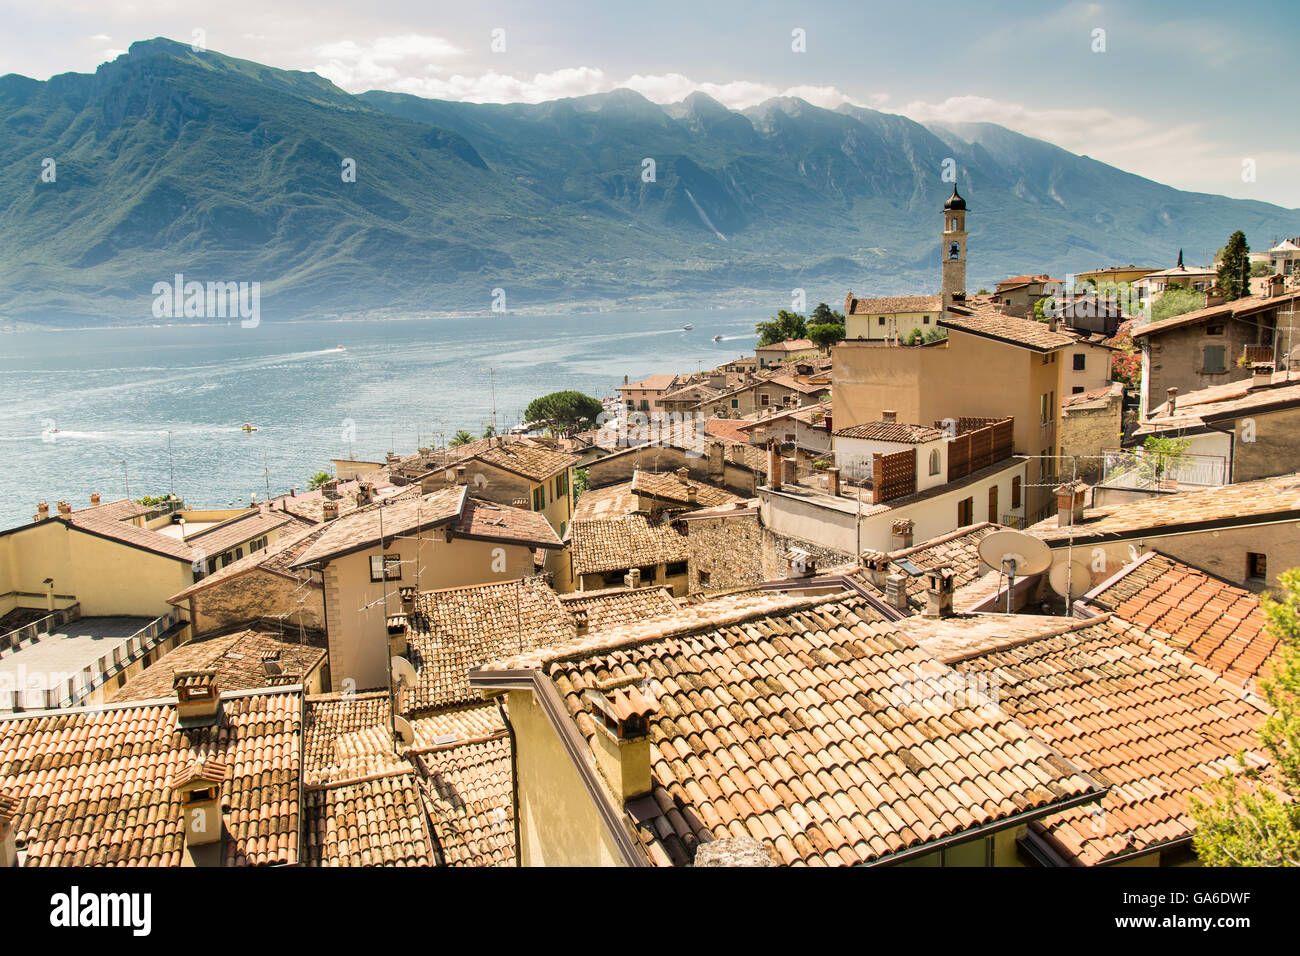 Panorama von Limone Sul Garda, eine kleine Stadt am Gardasee, Italien. Stockfoto